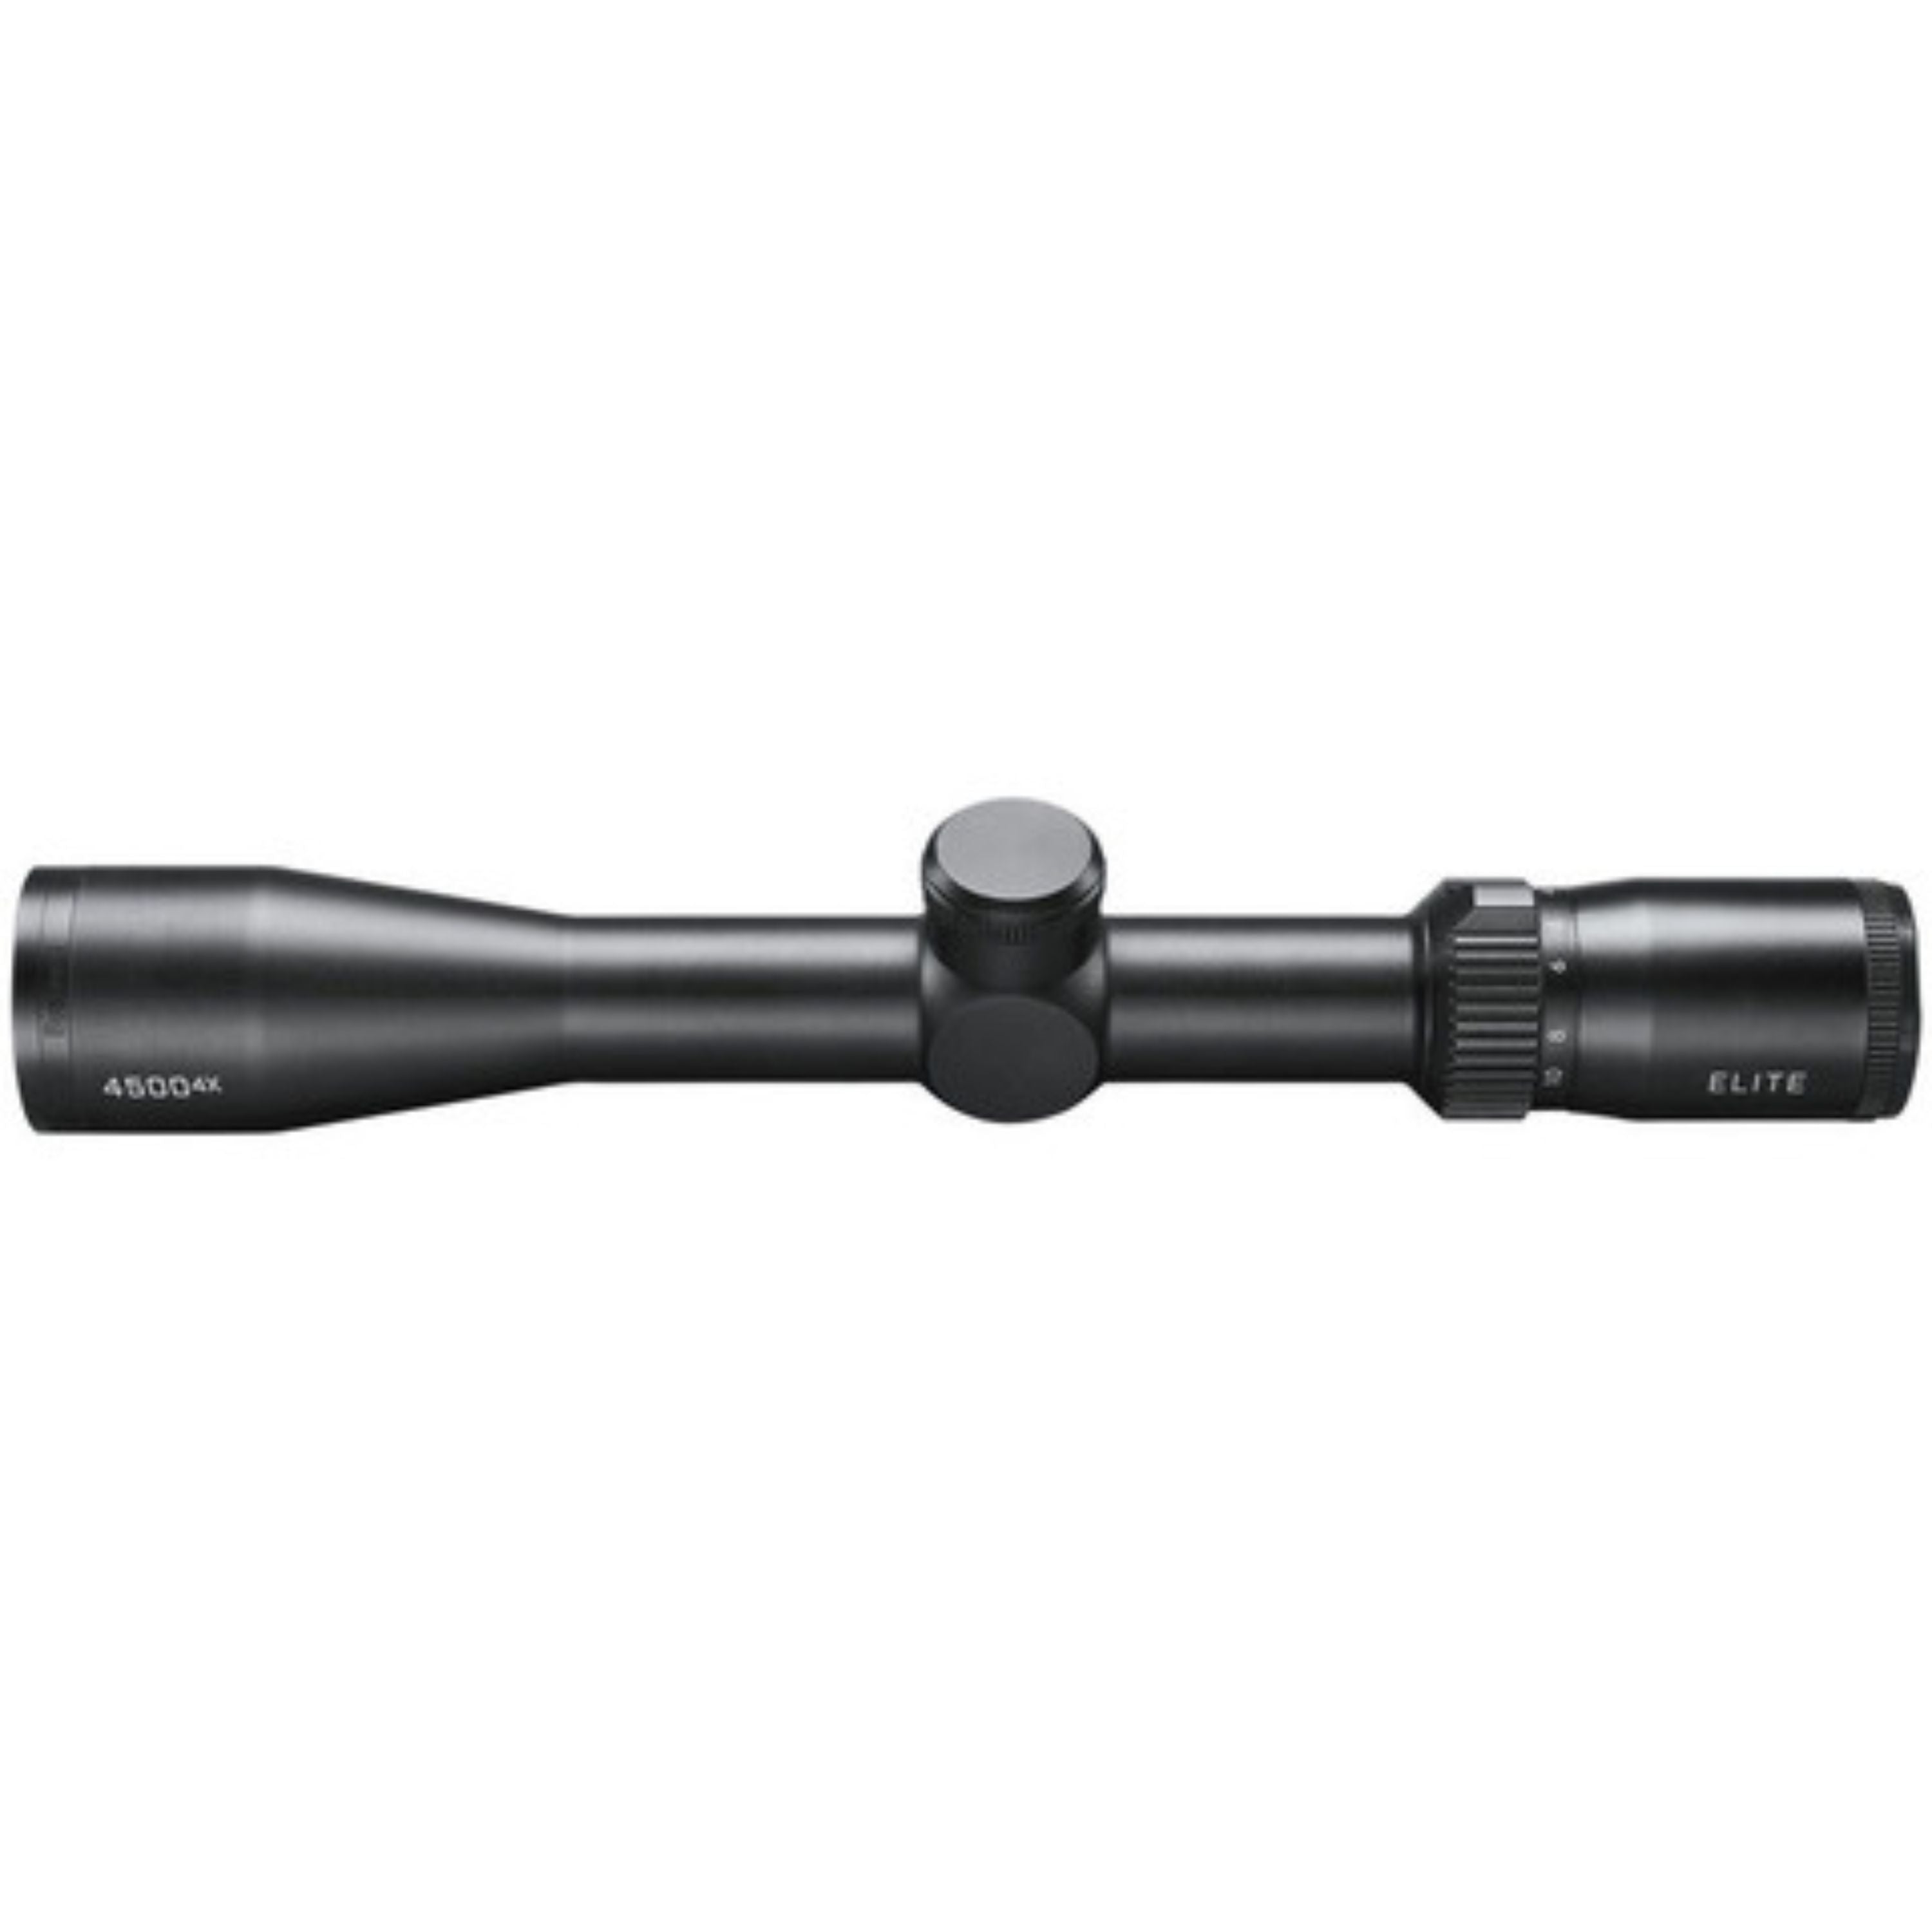 Télescope "Elite 4500" 2,5 -10 X 40  30 mm tube||"Elite 4500" Riflescope 2,5-10X40 30 mm Tube